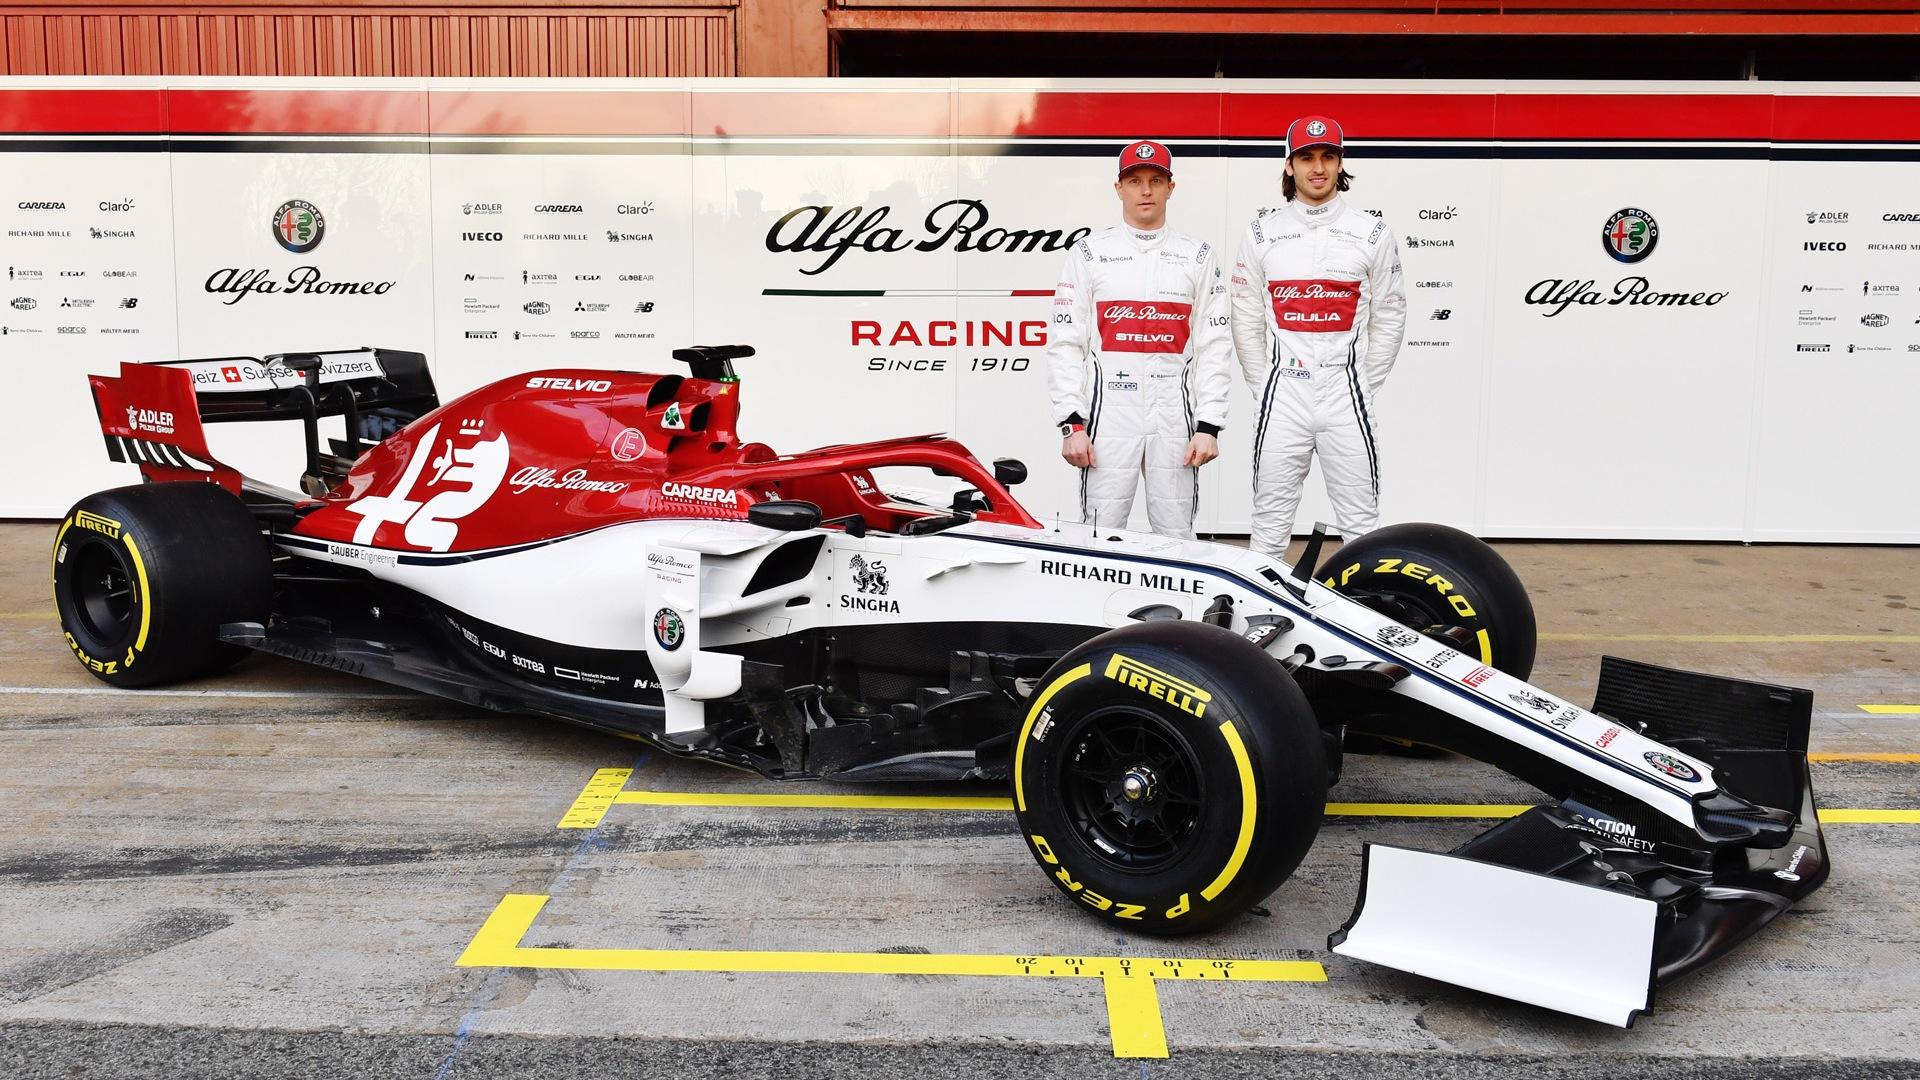 Here's the Alfa Romeo F1 car that Kimi Räikkönen will race in 2019